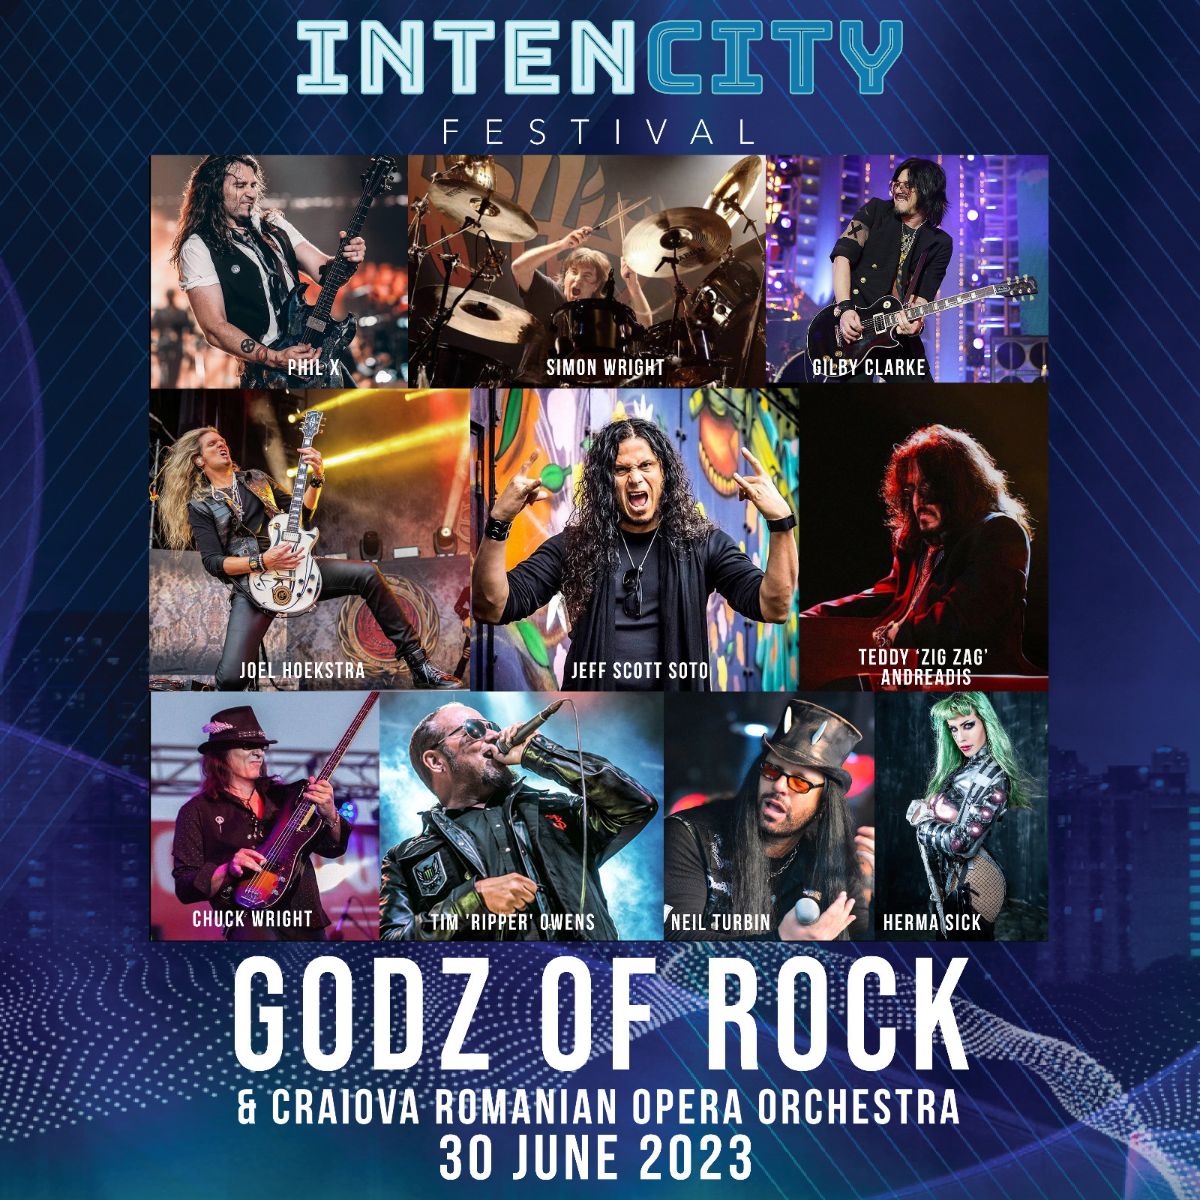 Gods of Rock feat.  Gilby Clarke, Jeff Scott Soto, Tim ‘Ripper’ Owens și headlineri la Intensity Festival din România